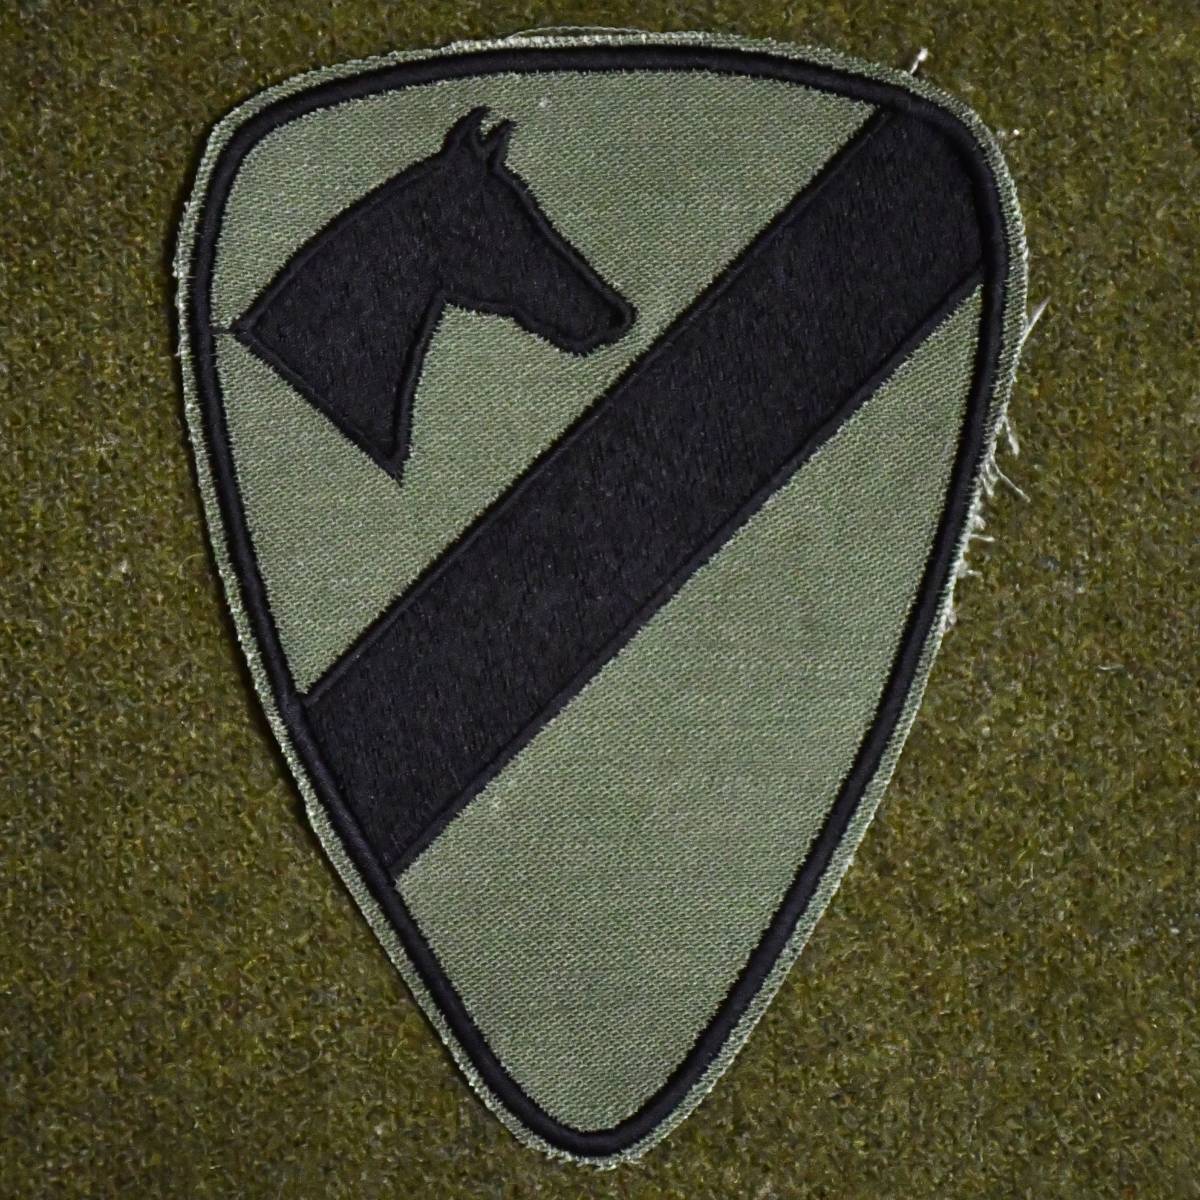  第1騎兵師団 部隊章 リバース パッチの画像1